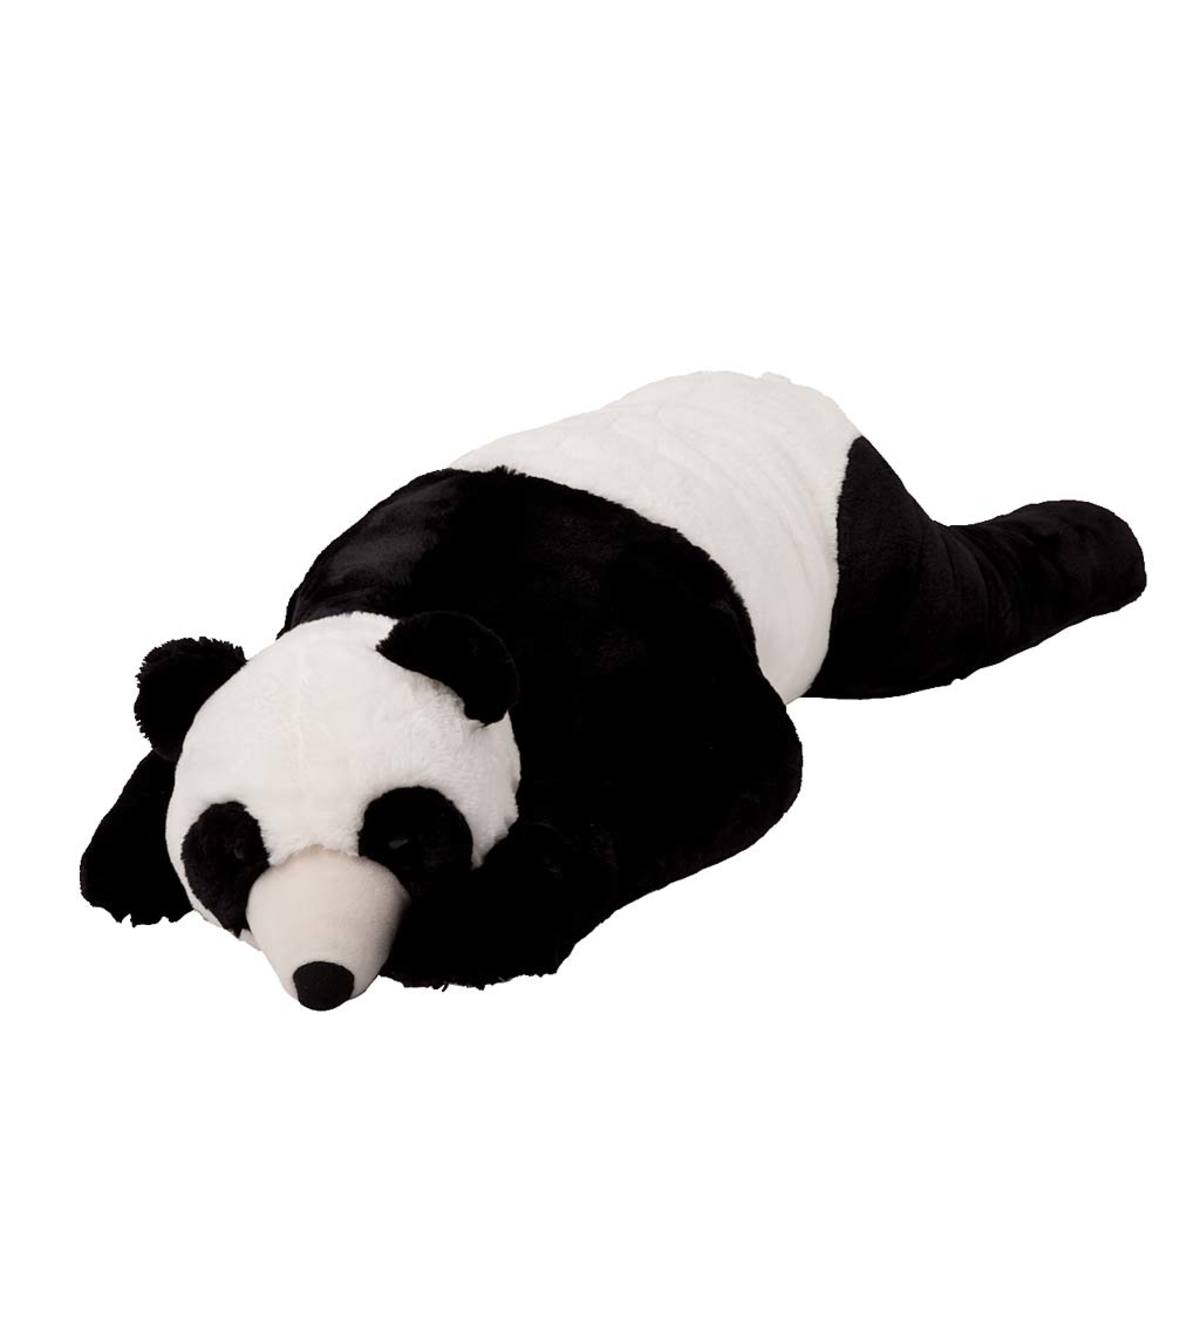 Bear Hug Body Pillows - Panda Bear